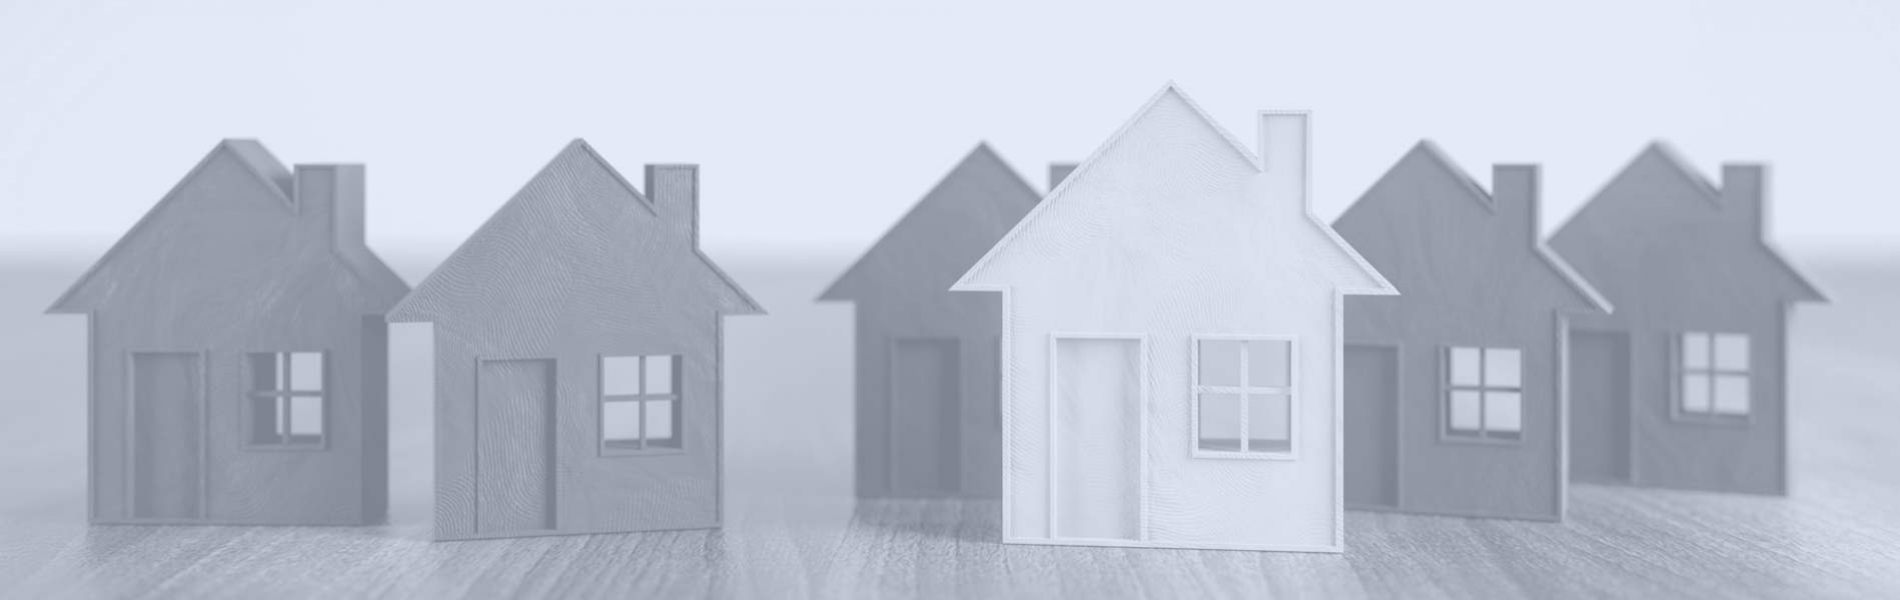 Miniatur-Hausfassaden aus Holz aufgereiht bildlich Immobilienrecht Rechtsanwalt 